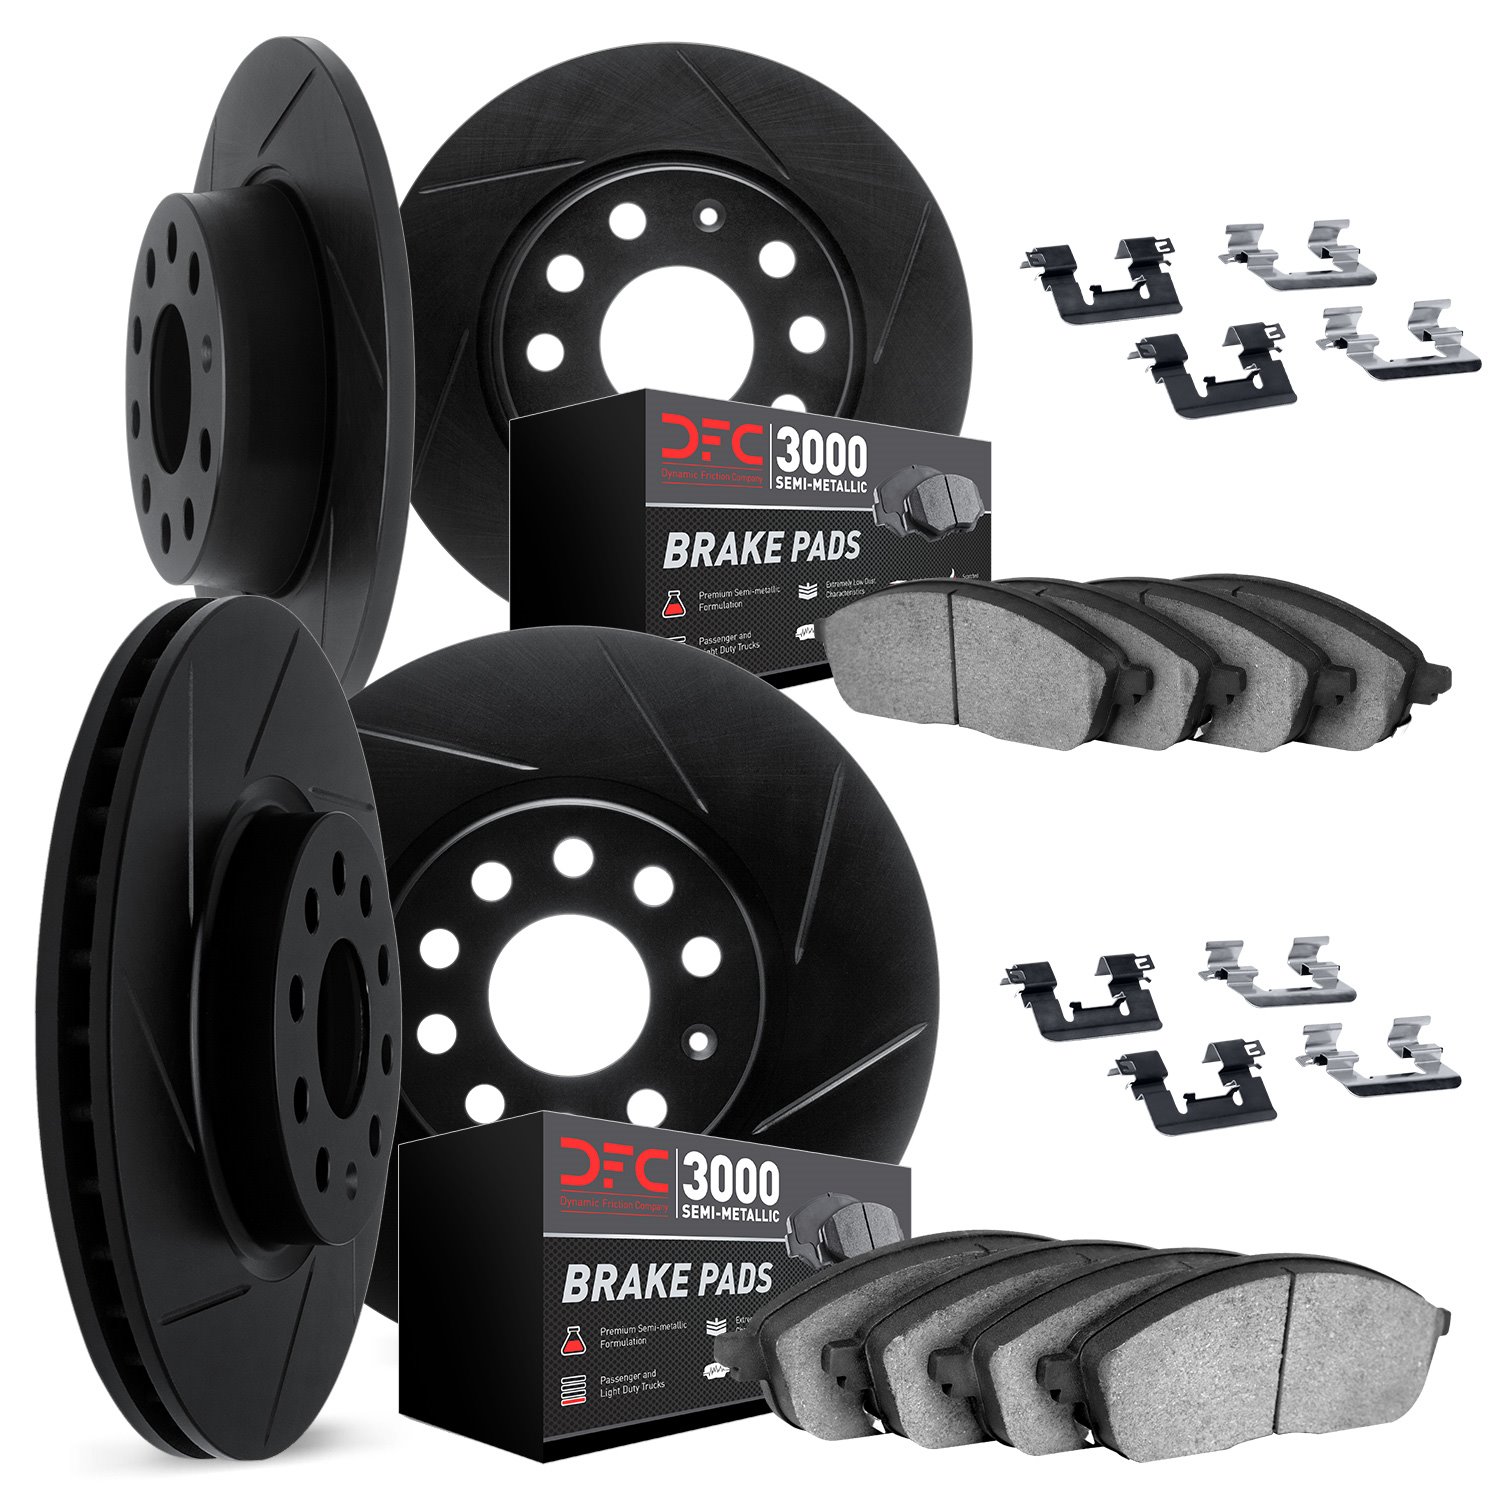 3114-63080 Slotted Brake Rotors with 3000-Series Semi-Metallic Brake Pads Kit & Hardware [Black], 1998-2005 Mercedes-Benz, Posit